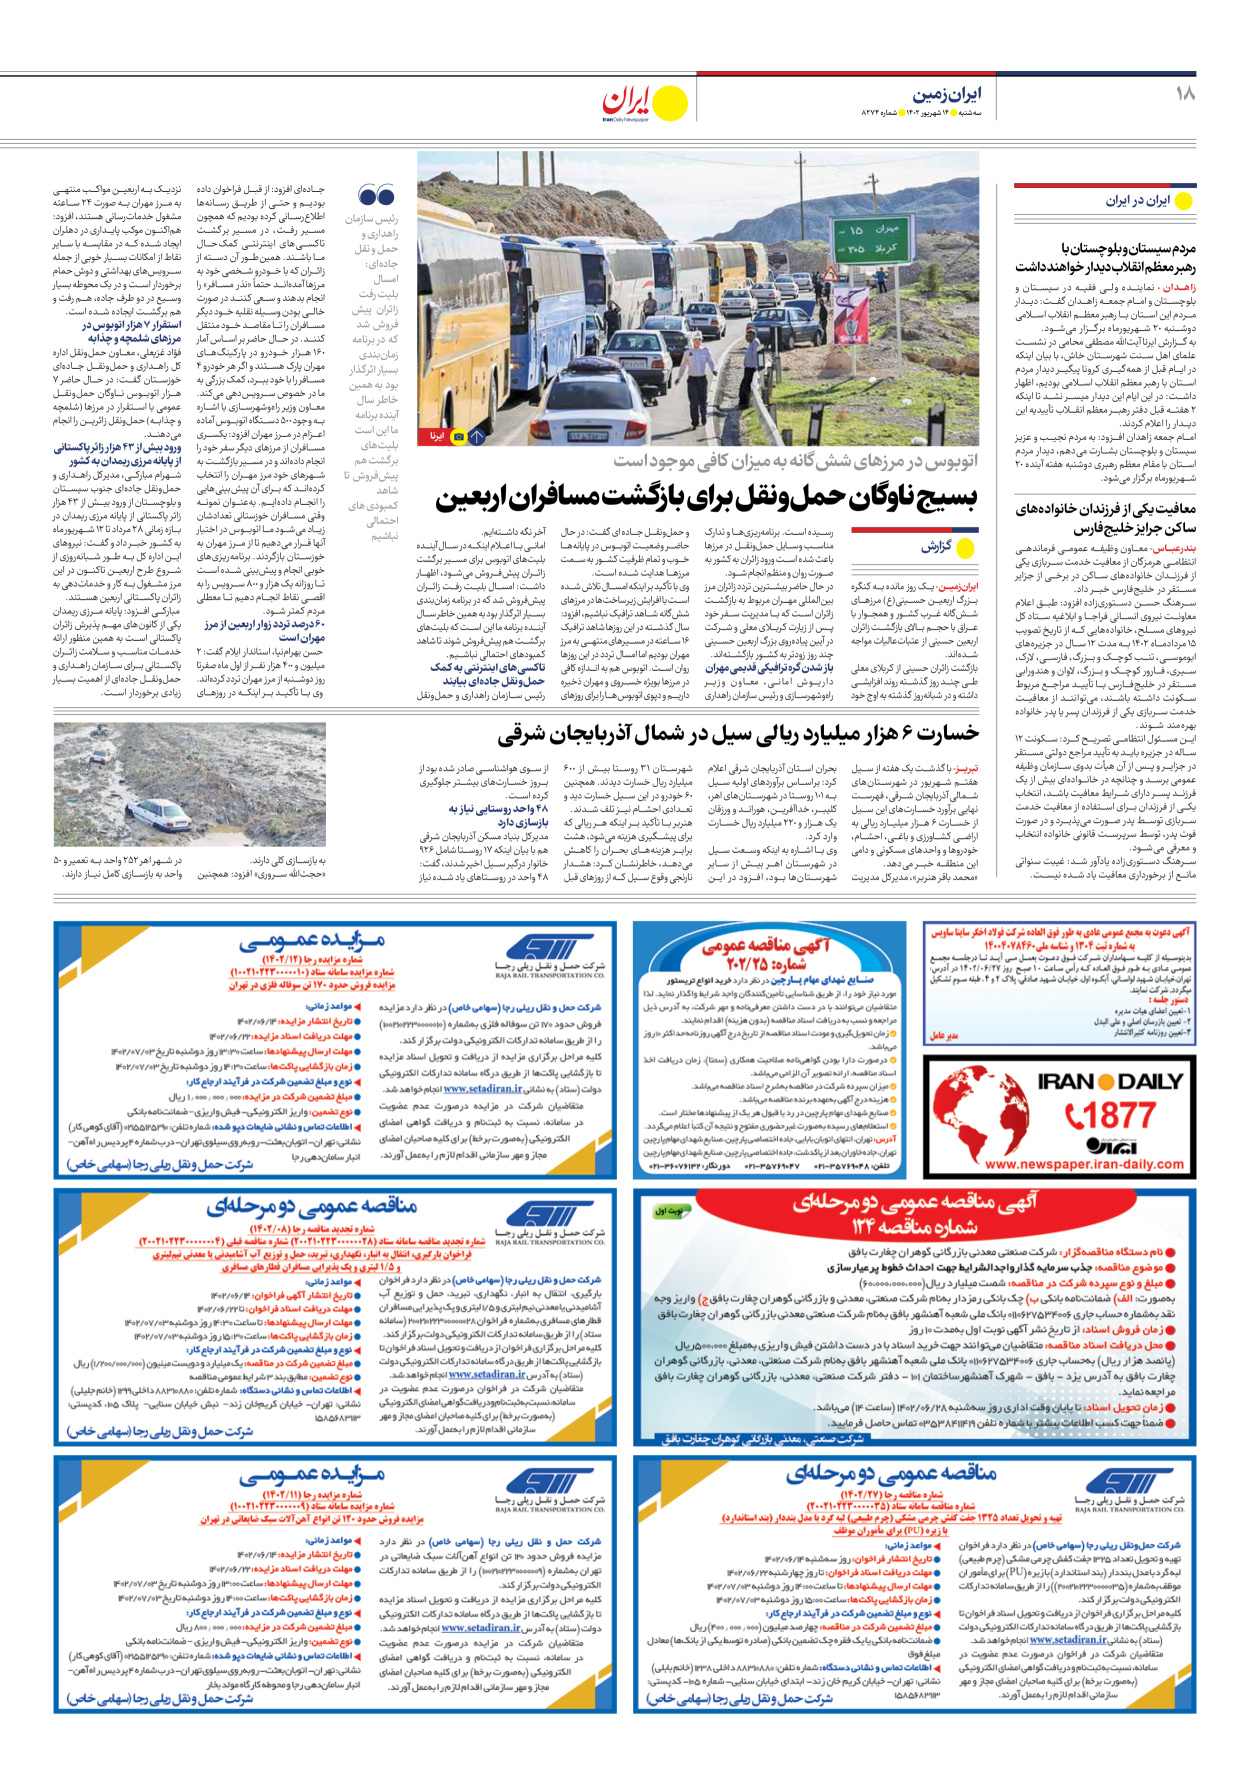 روزنامه ایران - شماره هشت هزار و دویست و هفتاد و چهار - ۱۴ شهریور ۱۴۰۲ - صفحه ۱۸